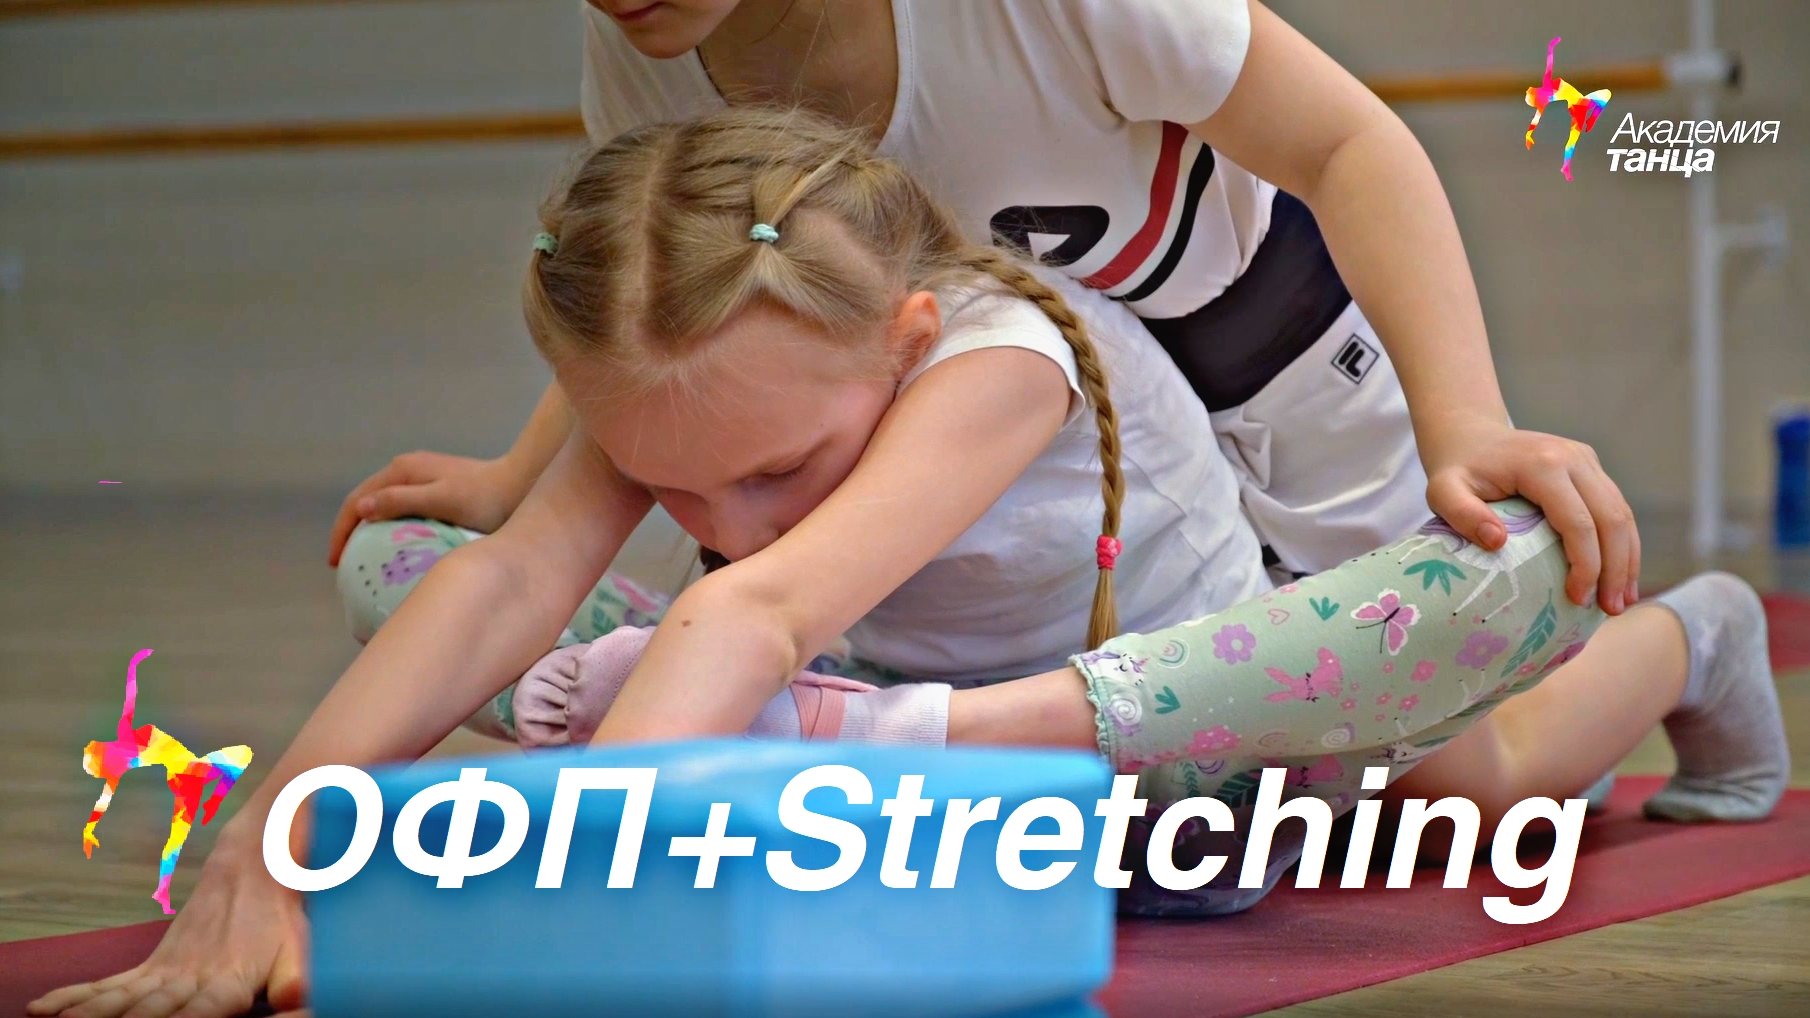 ОФП+Stretching - Академия танца